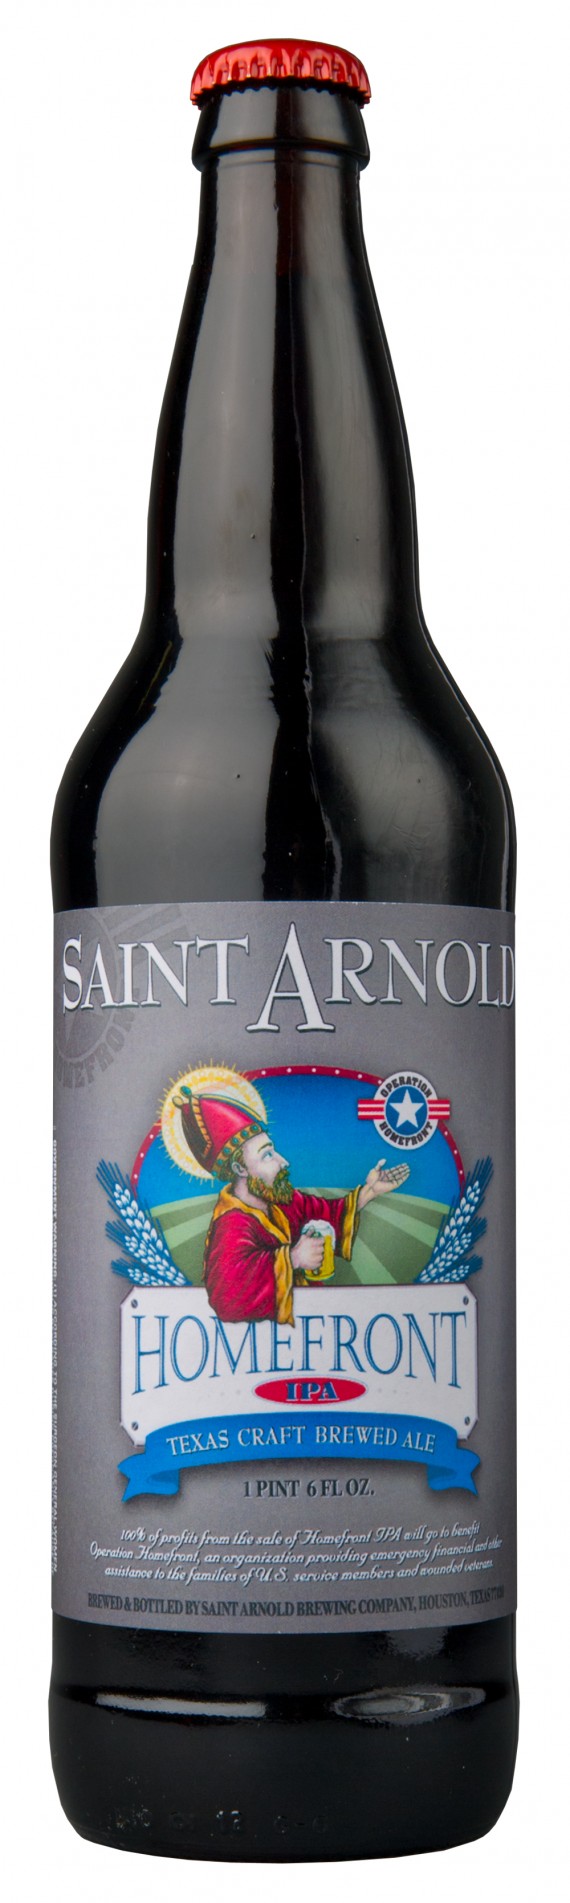 Saint Arnold Homefront IPA Bottle